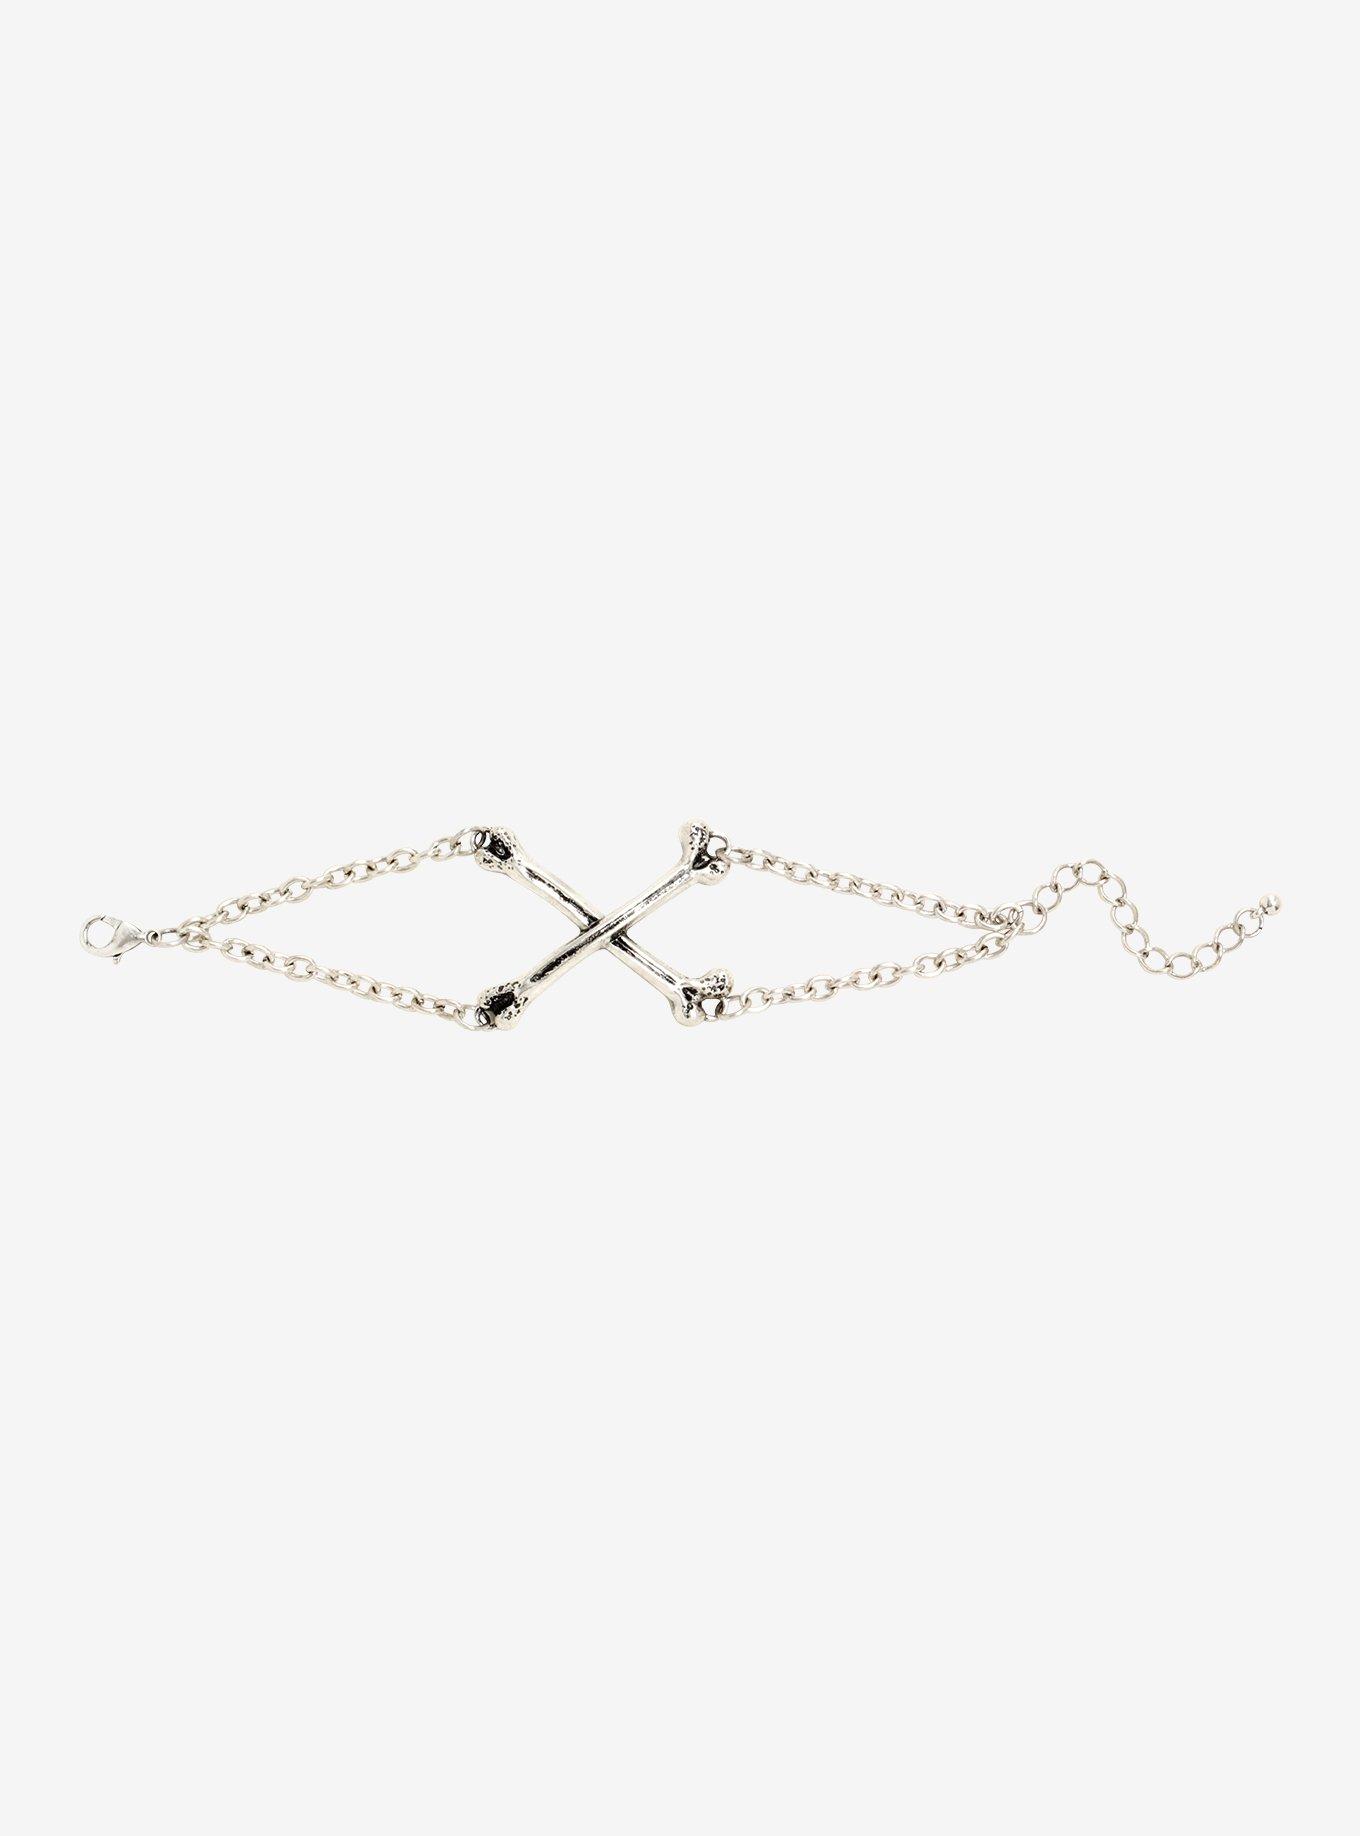 Blackheart Crossbones Chain Bracelet, , alternate